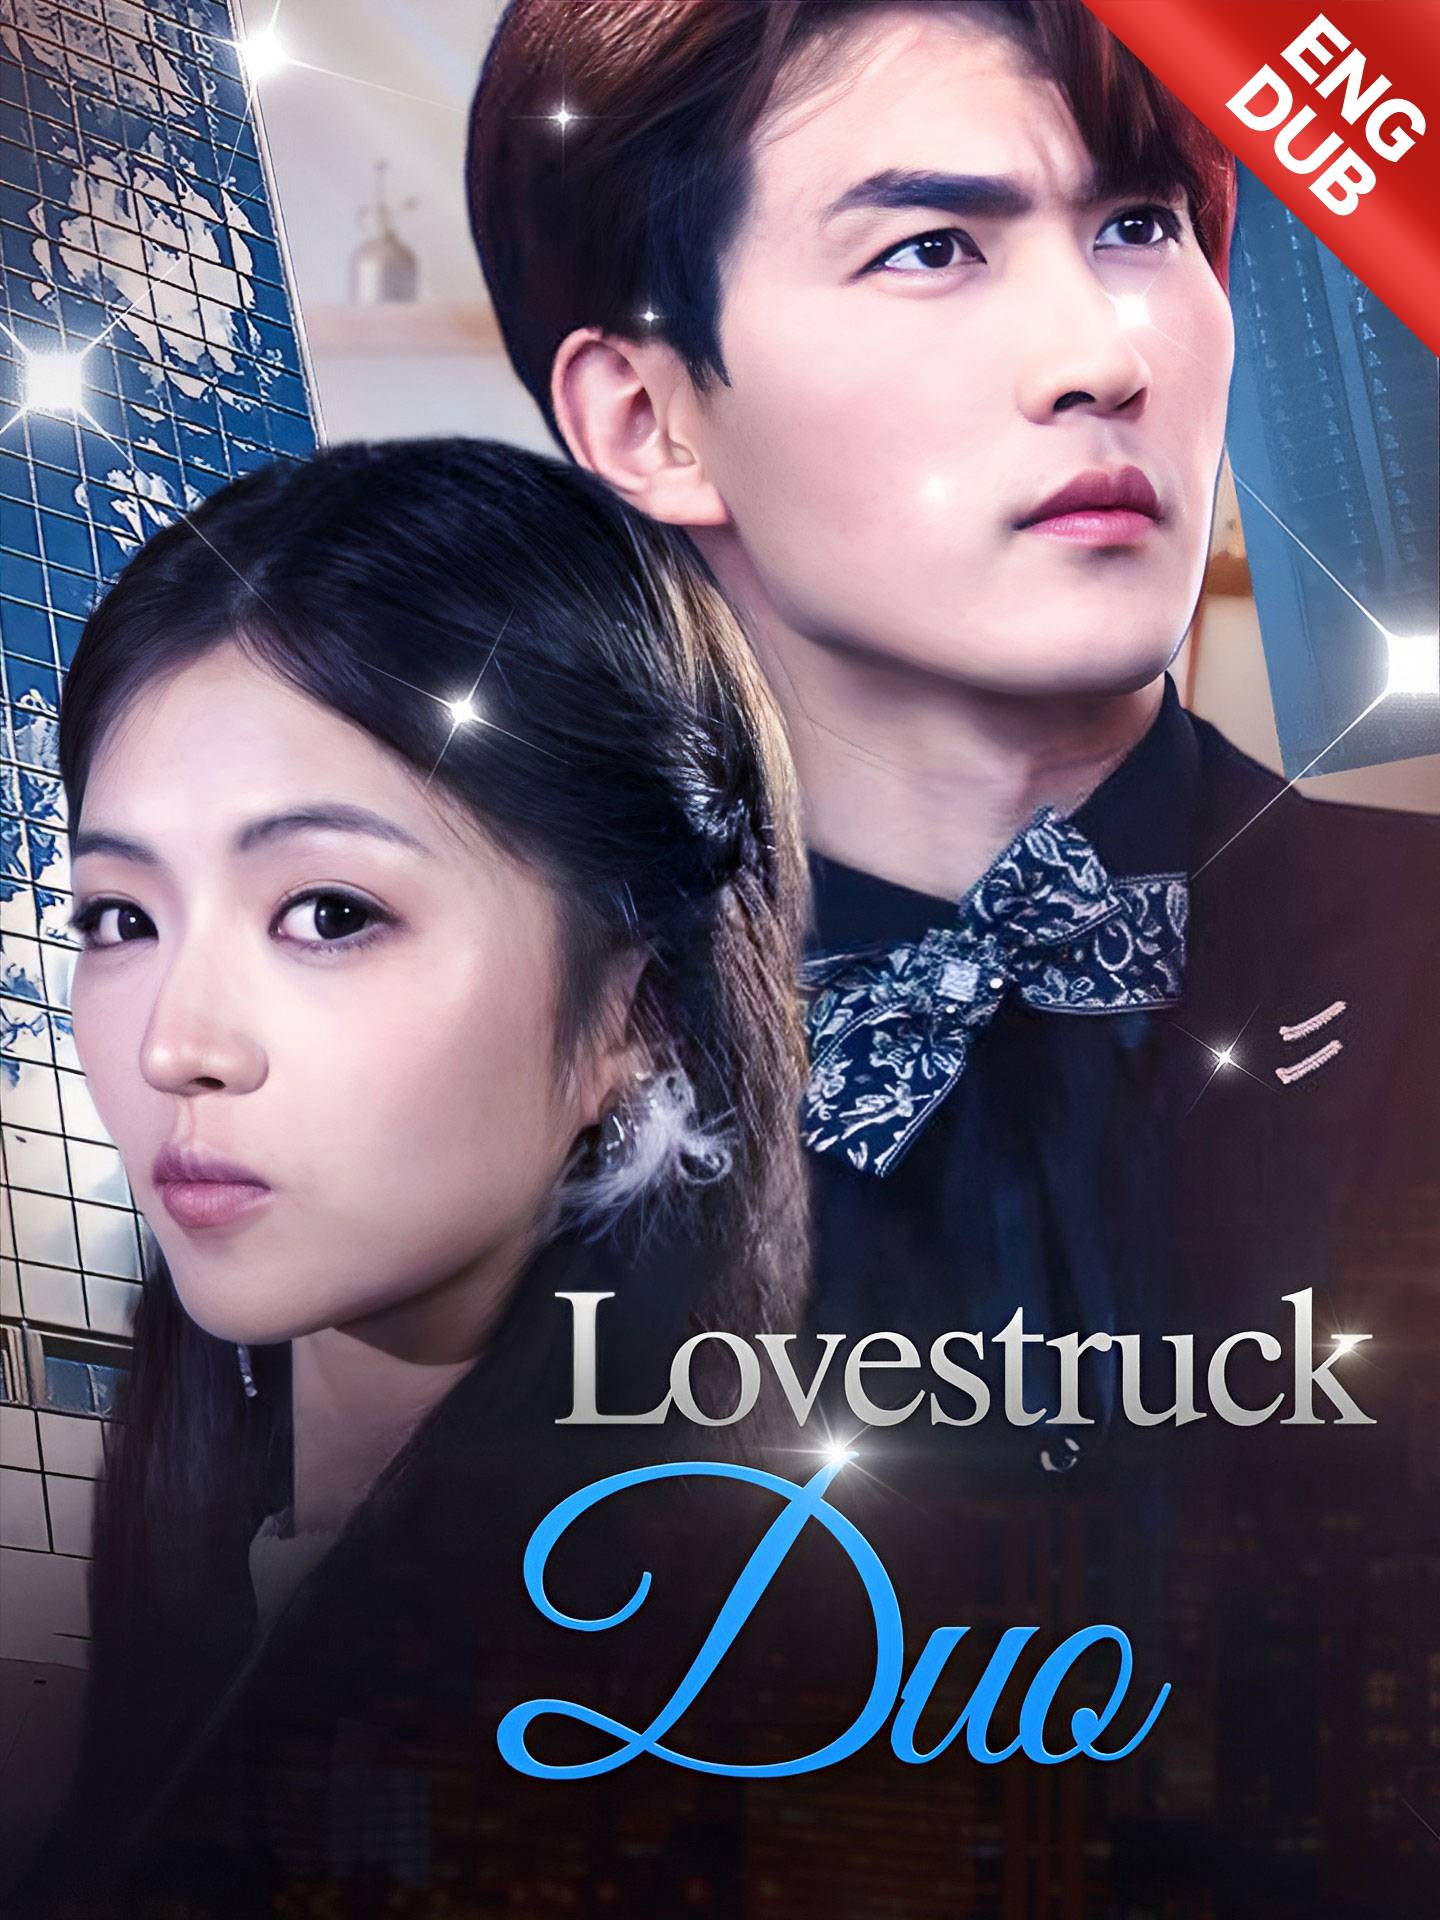 [ENG DUB] Lovestruck Duo